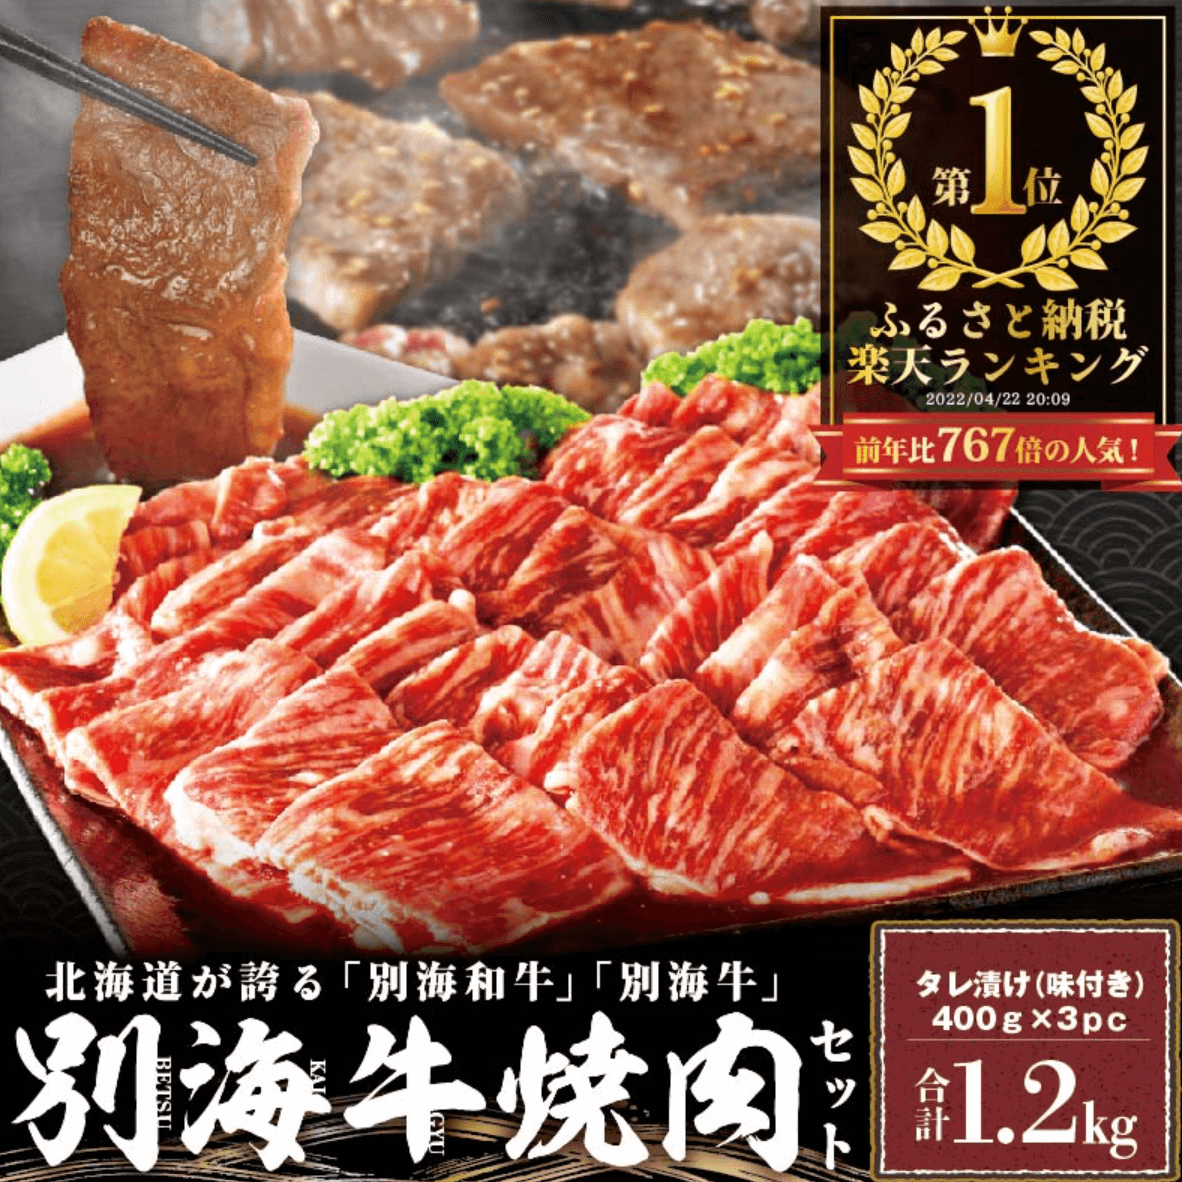 【1位獲得】北海道産 牛肉 1.2kg 【小分け / 発送時期が選べる】 ふるさと納税 ランキング 1位 別海牛焼肉